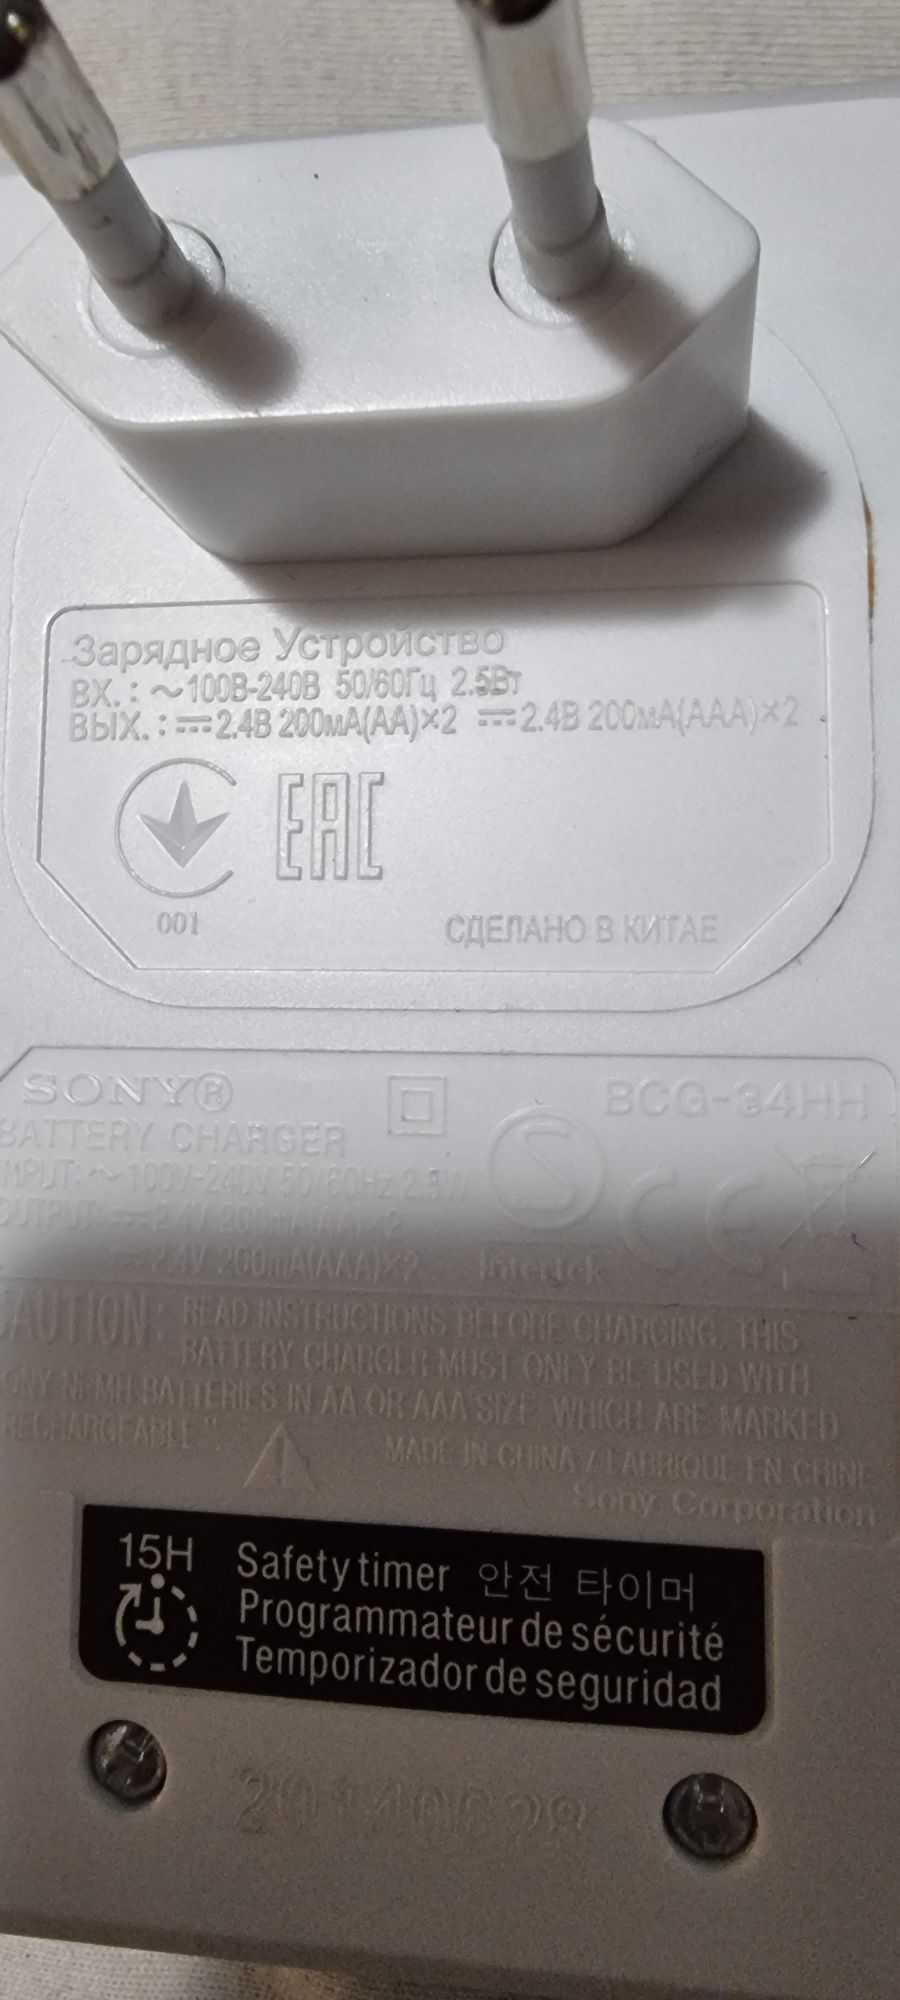 Incarcator Sony BCG-34HH pentru acumulatori reincarcabili